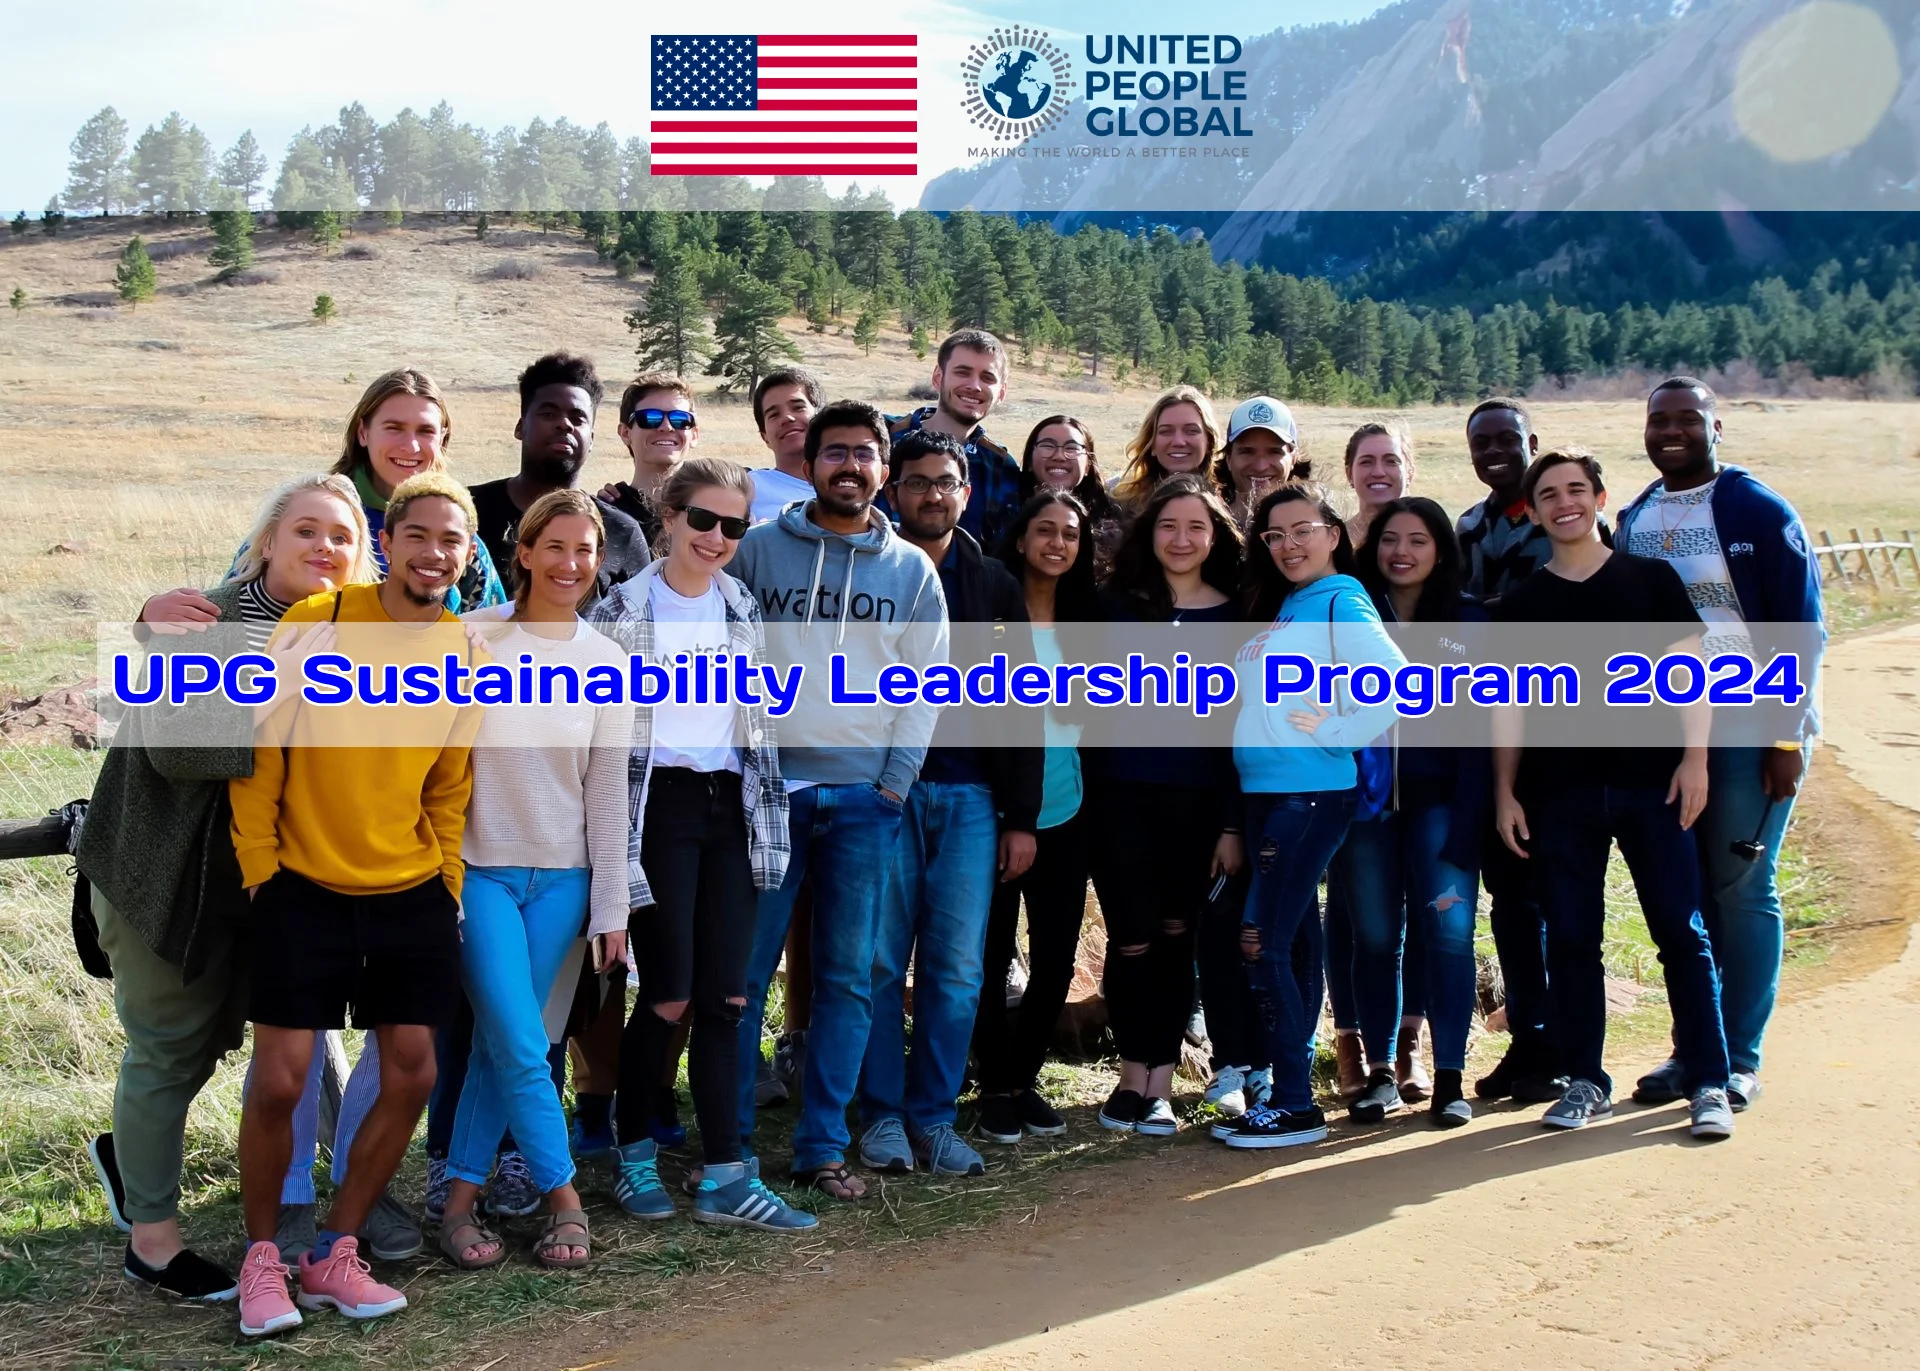 UPG Sustainability Leadership Program 2024 in USA (Fully Funded)